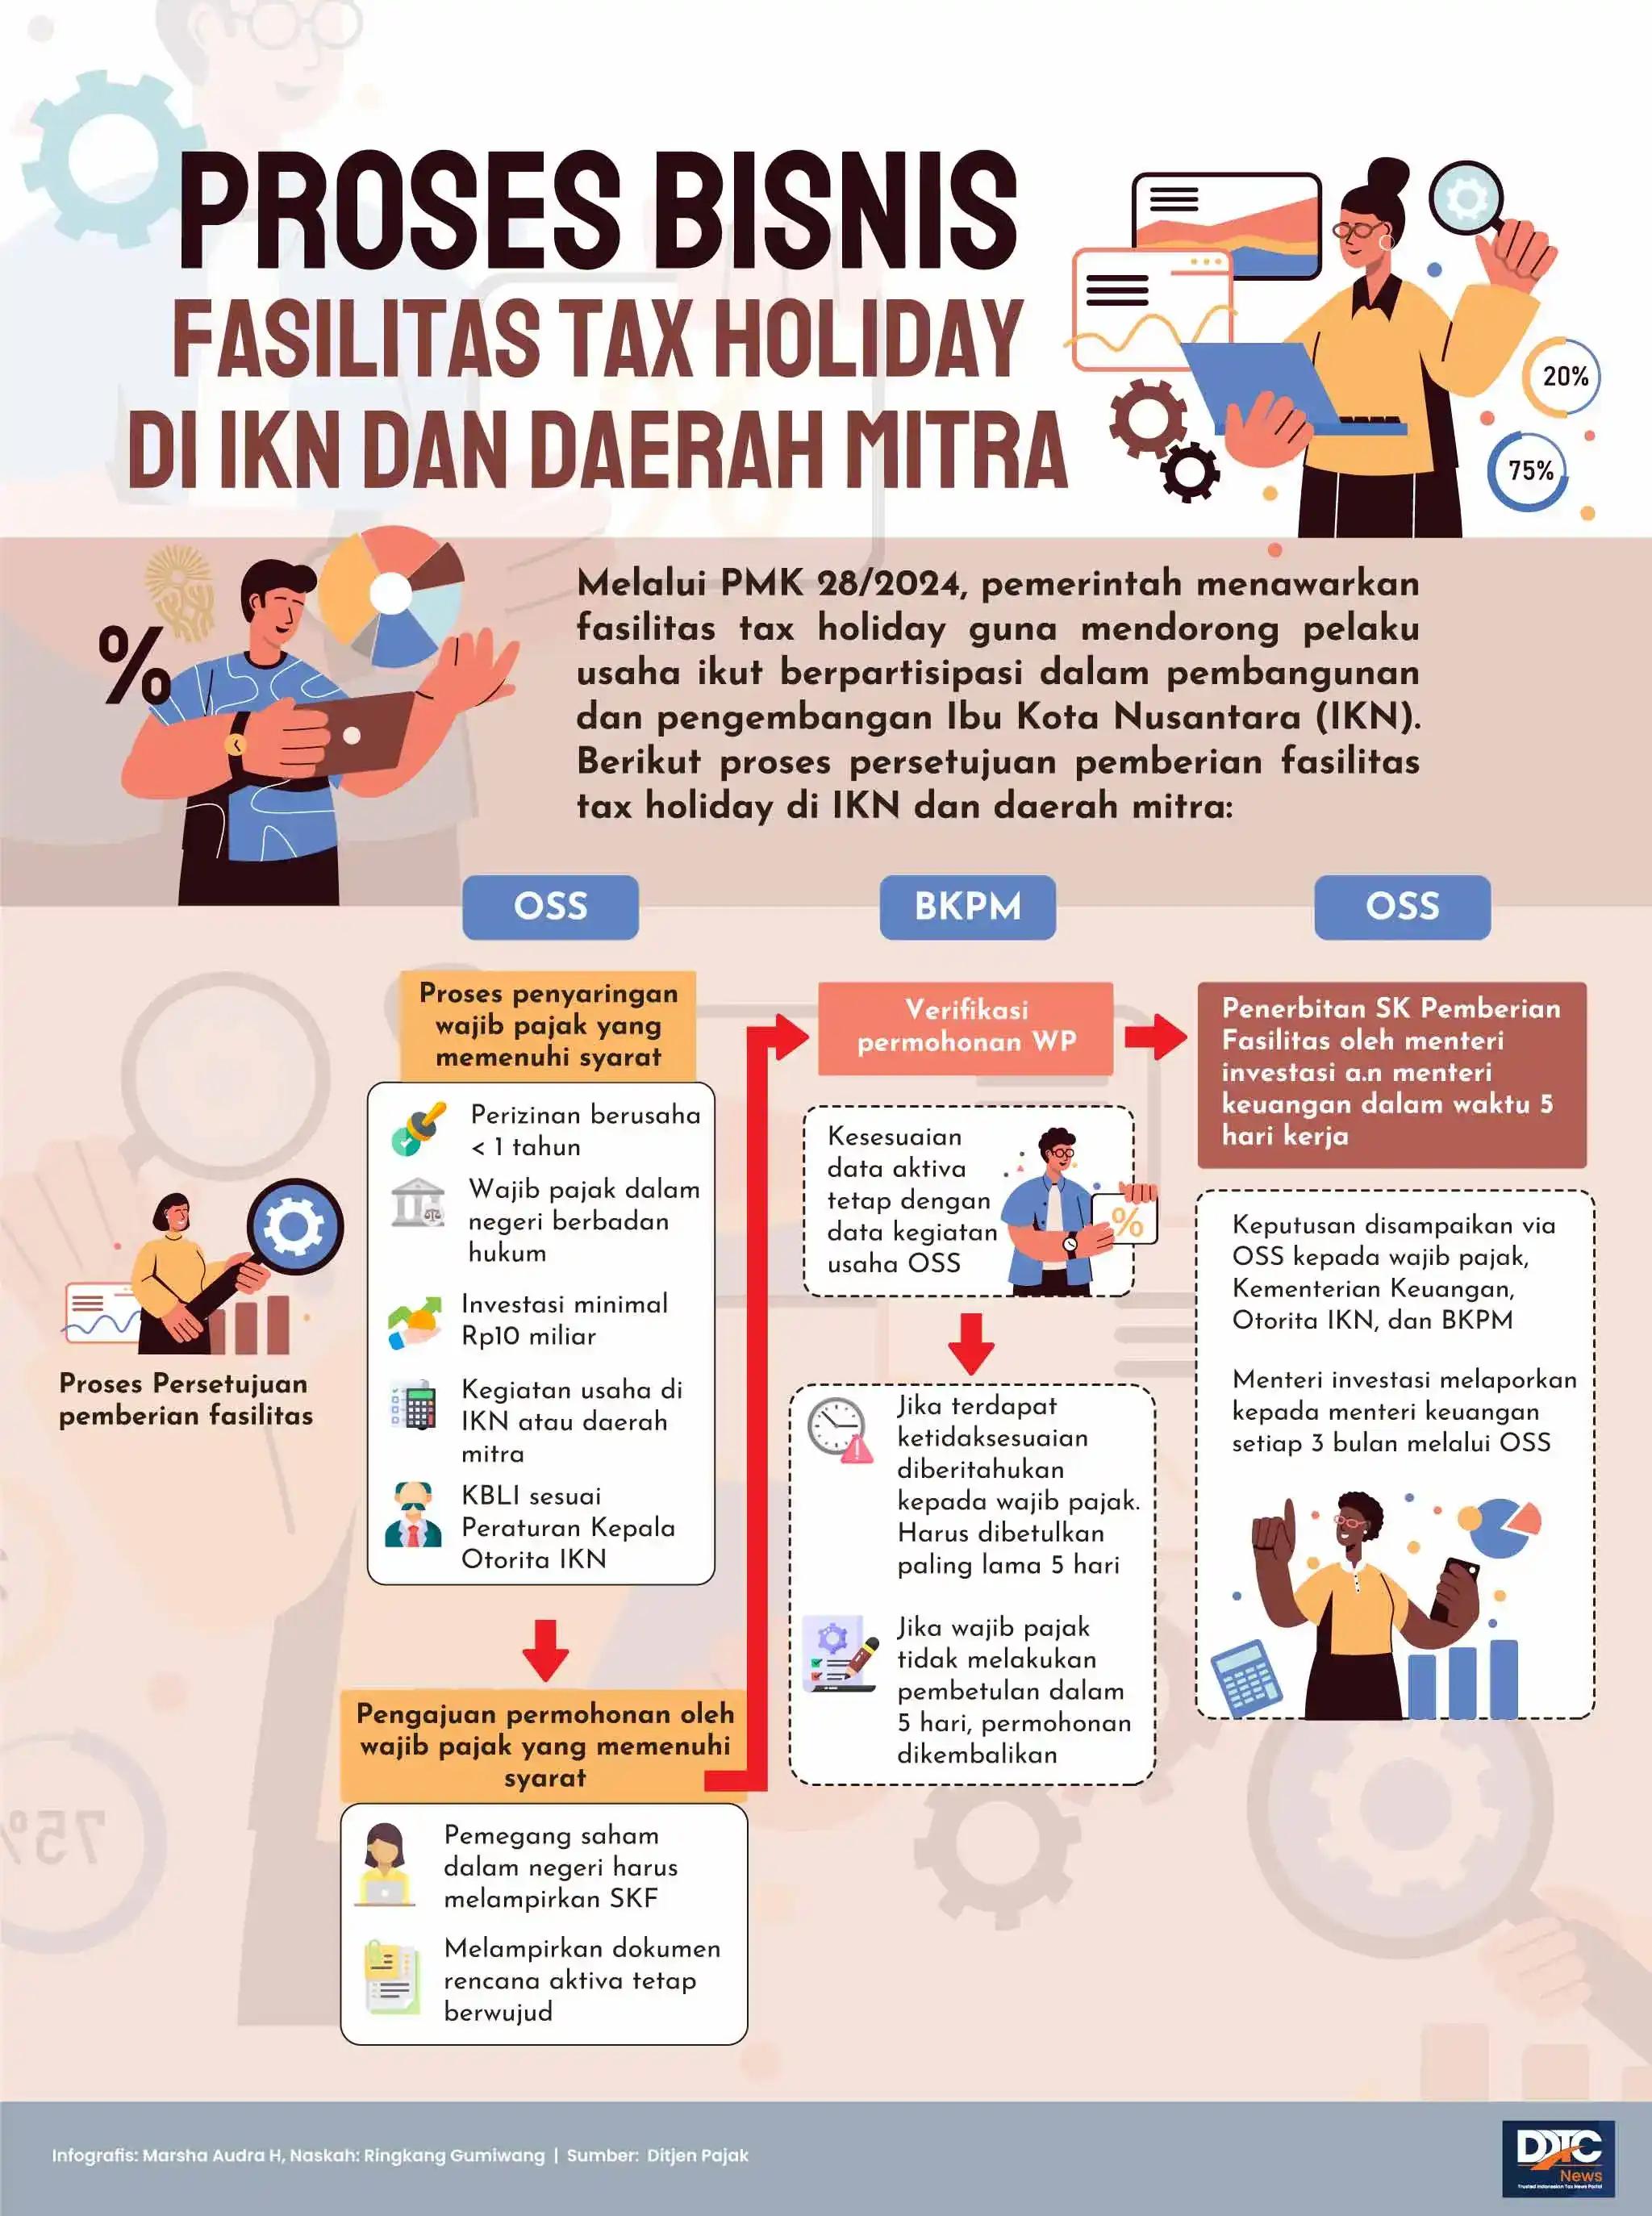 Proses Bisnis Fasilitas Tax Holiday di IKN dan Daerah Mitra